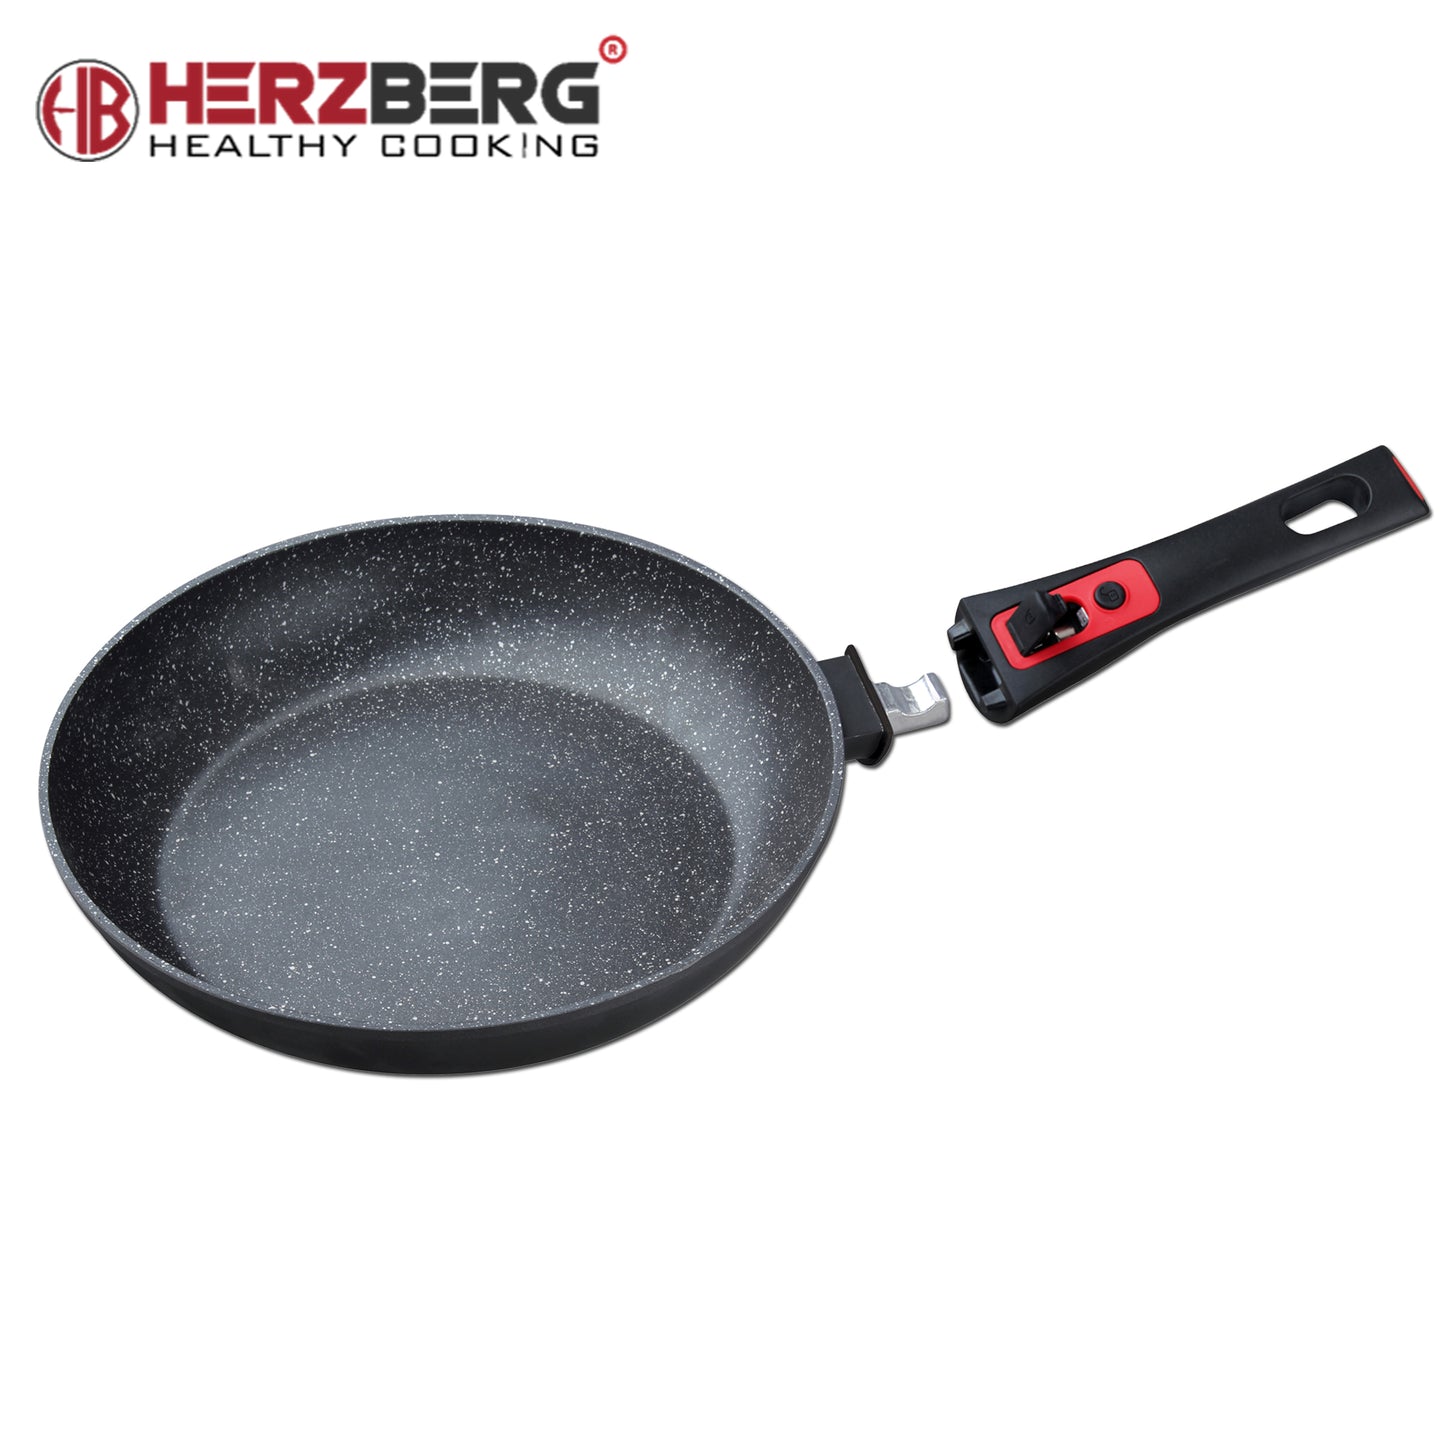 Herzberg HG-7022FP: Marmorbelagd stekpanna med avtagbart handtag - 22 cm